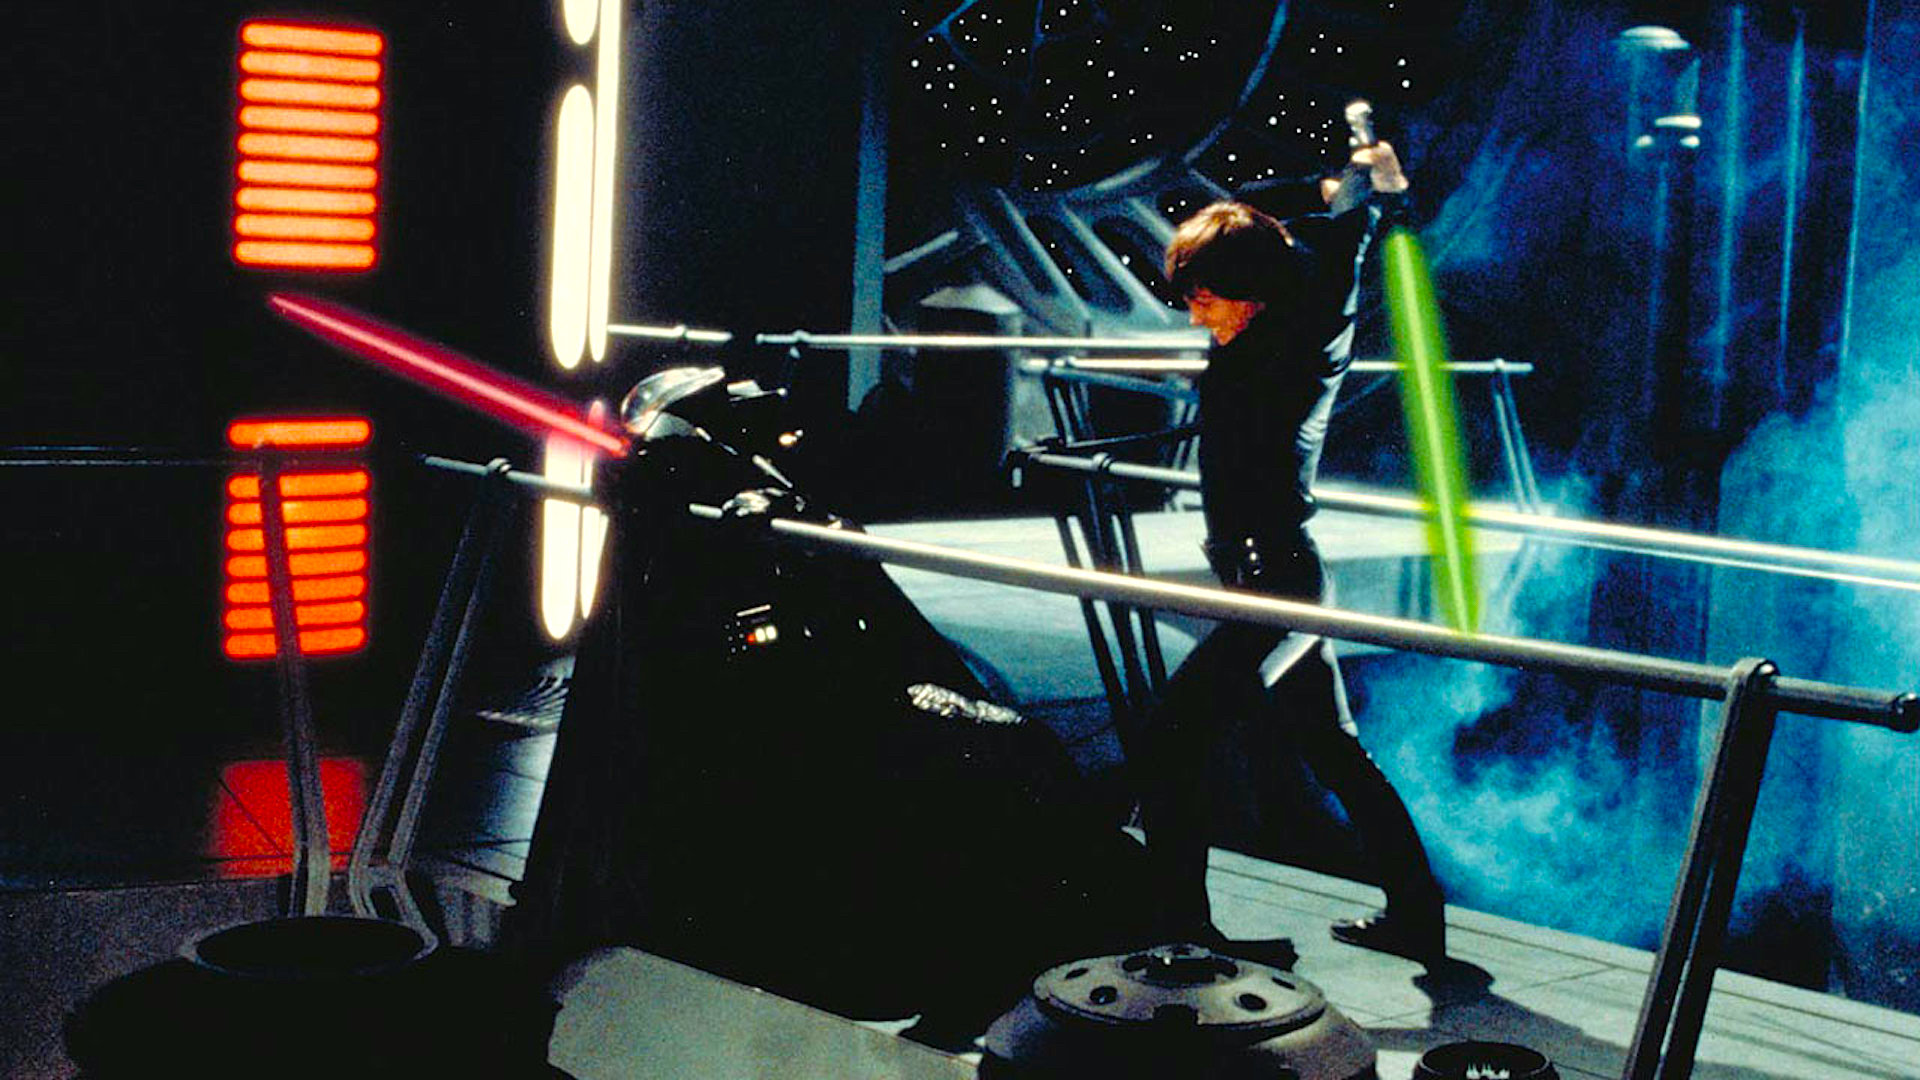 Luke Skywalker duels Darth Vader in Return of the Jedi.